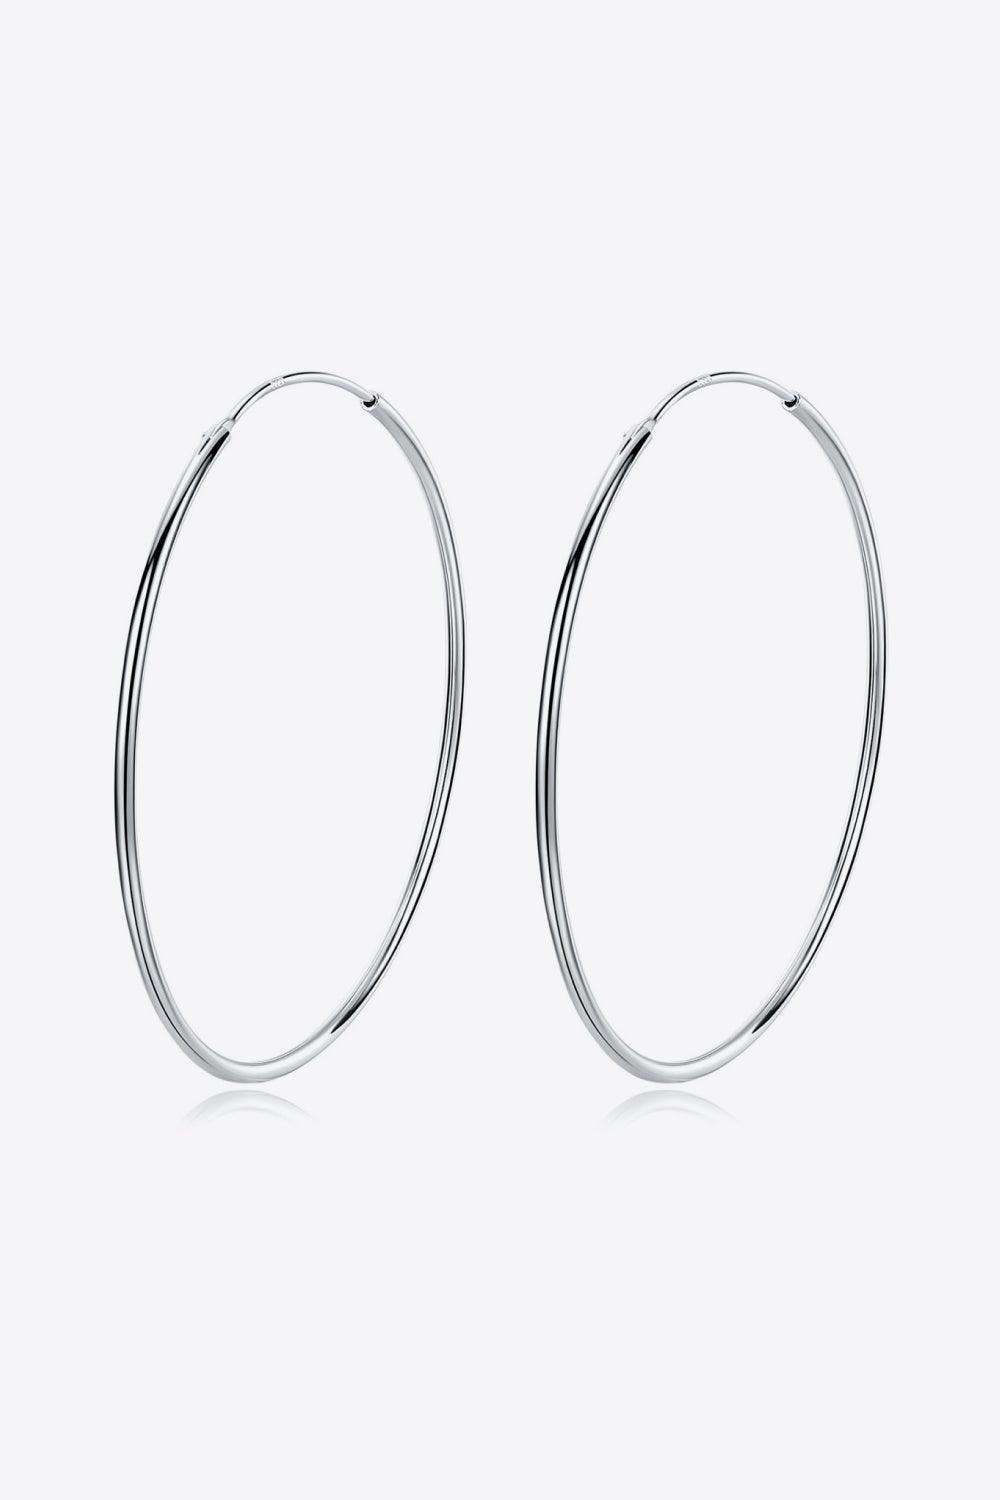 925 Sterling Silver Hoop Earrings - Earring